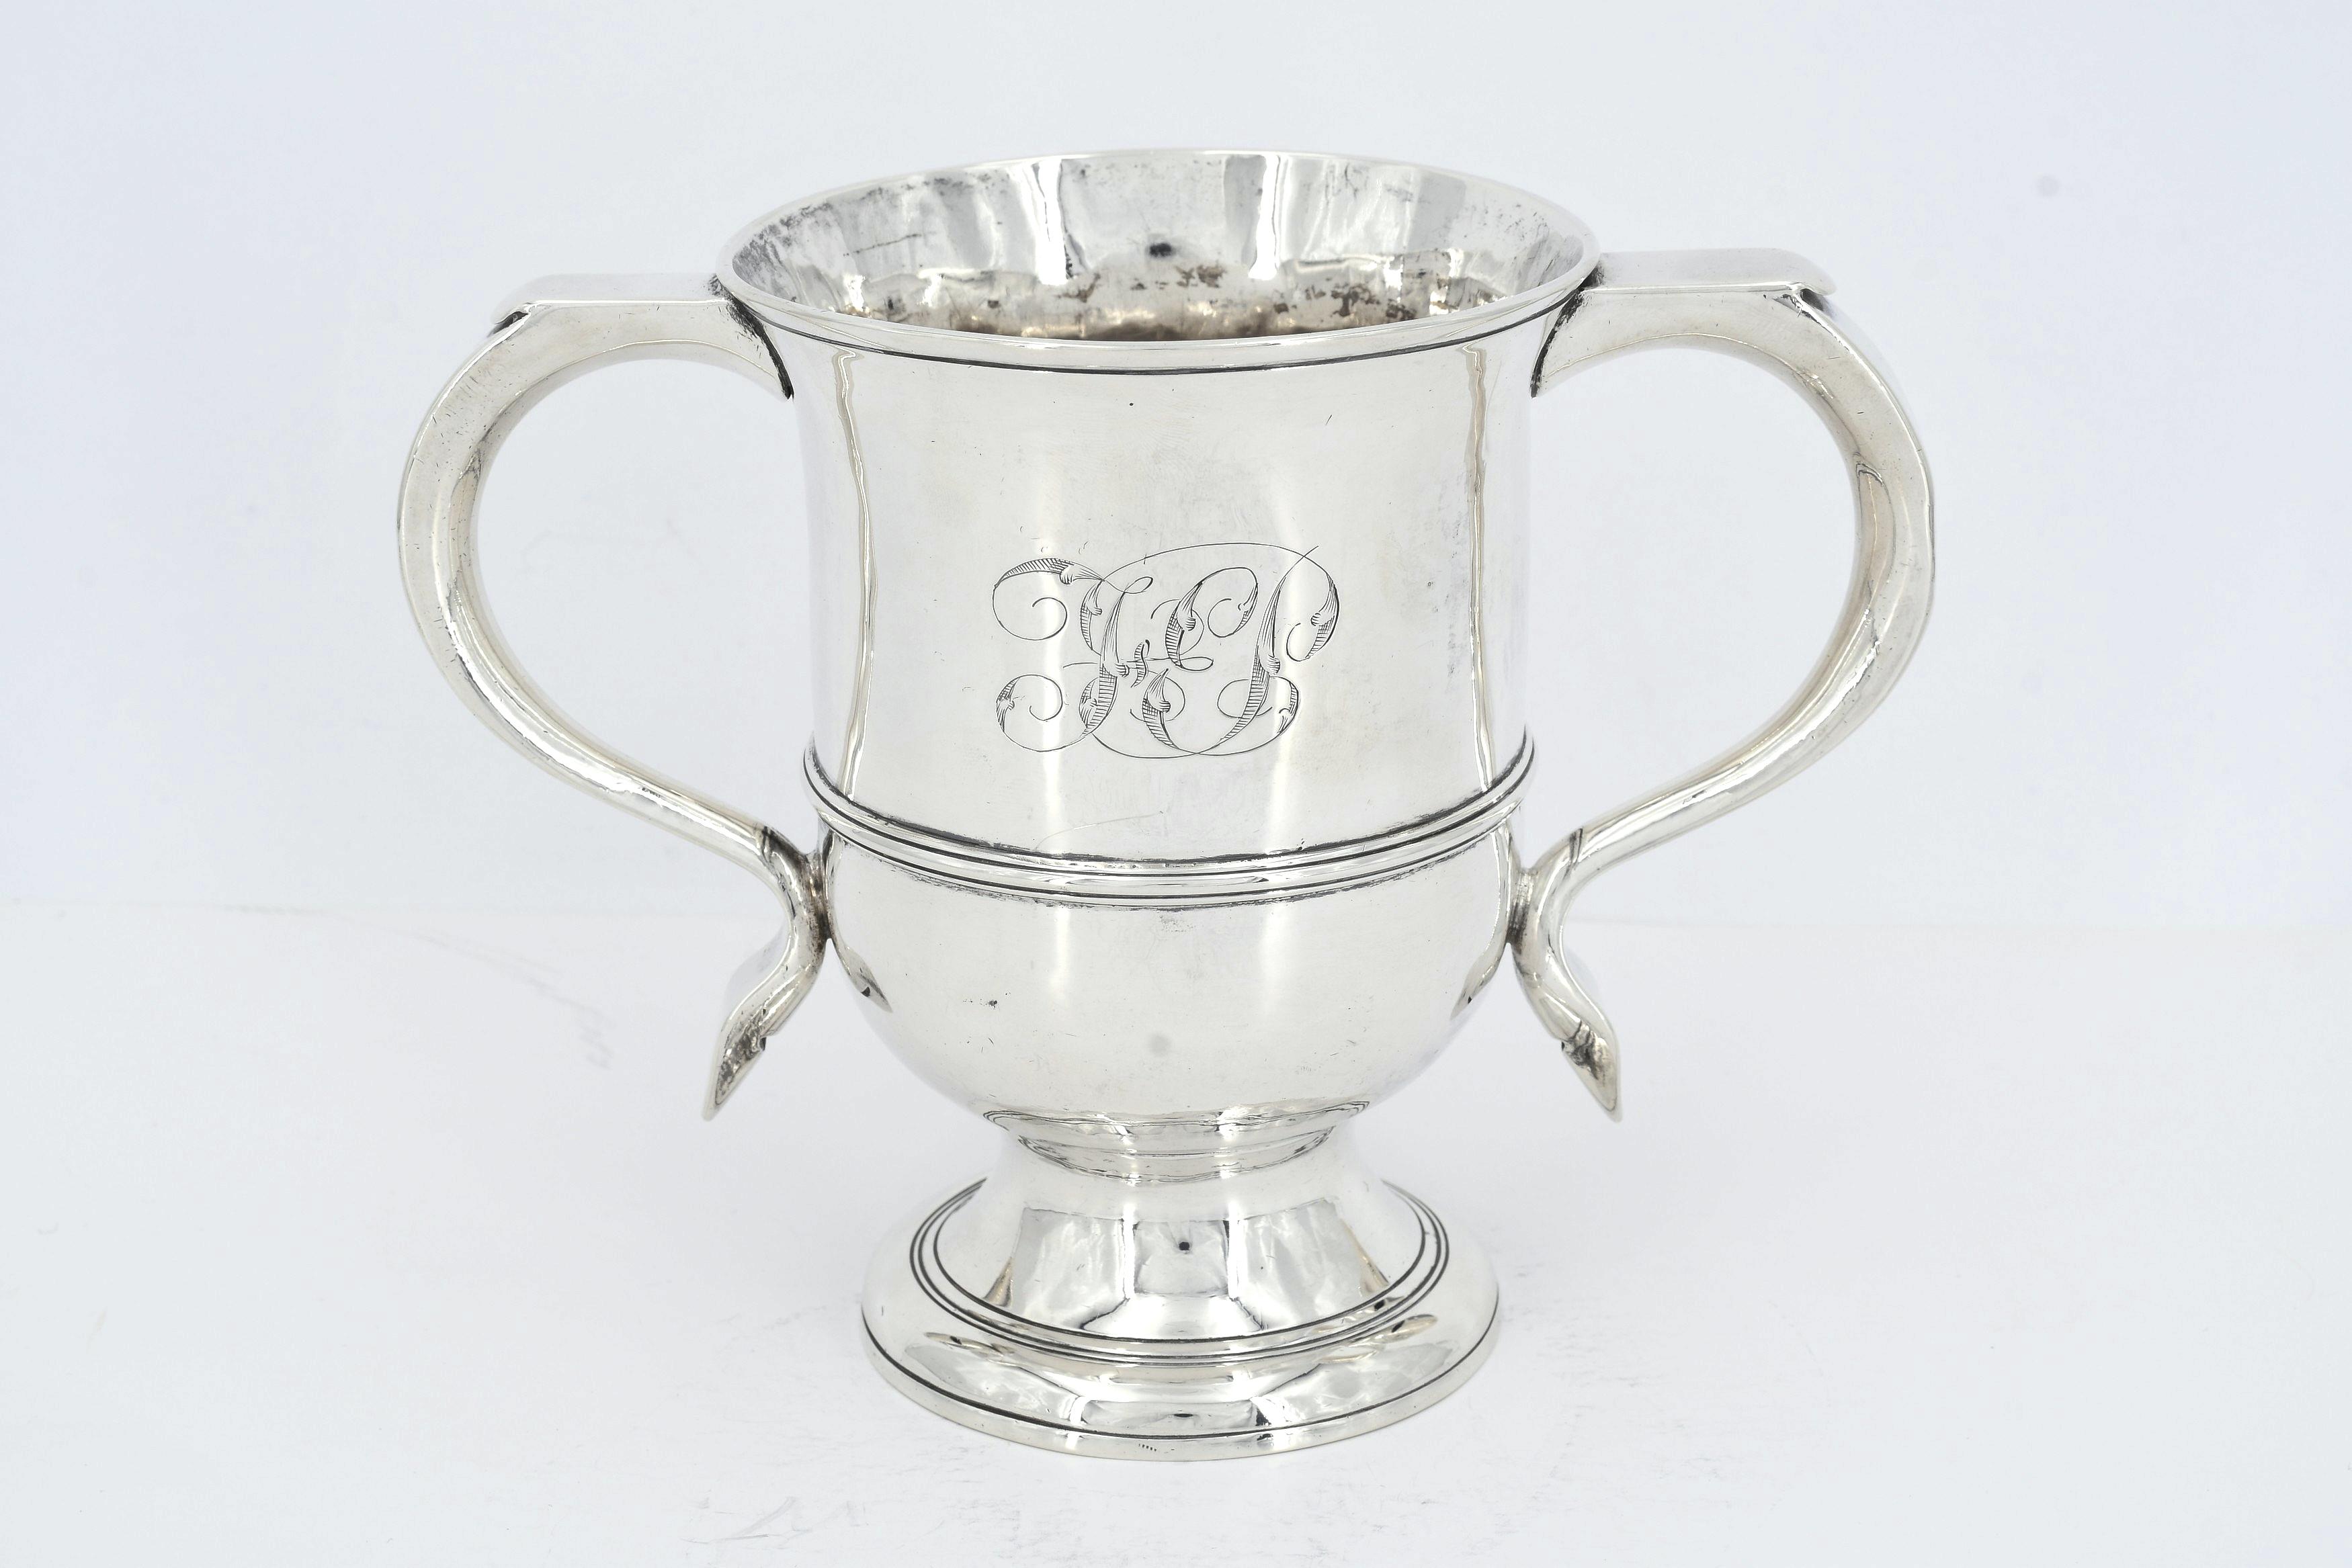 George III silver double-handled beaker with monogram - Image 2 of 7